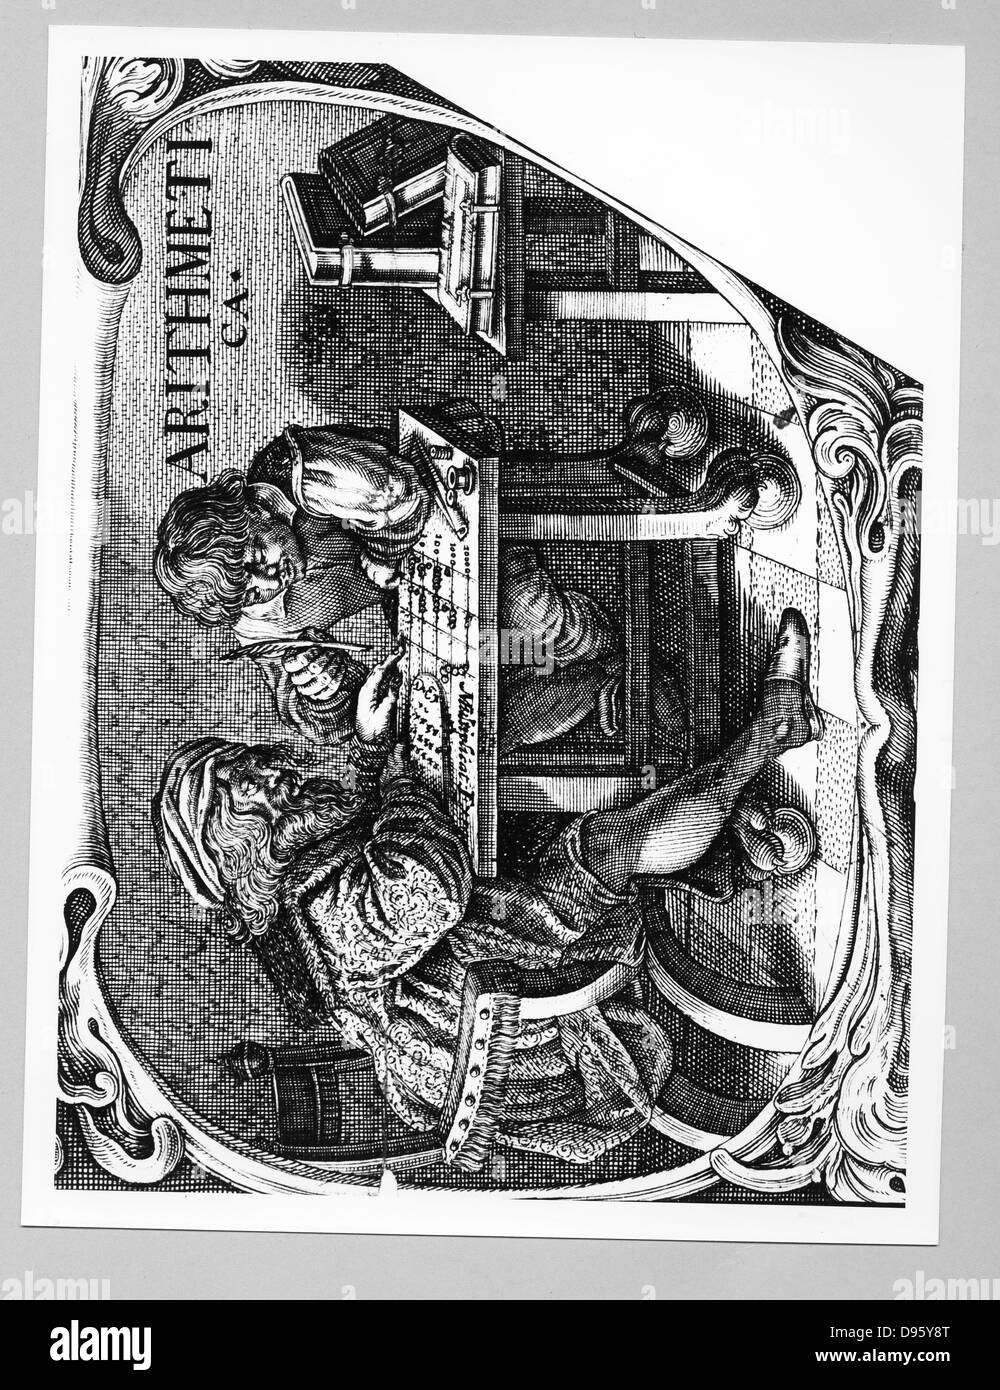 Kaufmann und seine Sekretärin mit einer Berechnung der Tabelle aufgebaut als eine Form von Abacus. Vignette aus einer Multiplikation im Jahre 1630 veröffentlicht. Kupferstich. Stockfoto